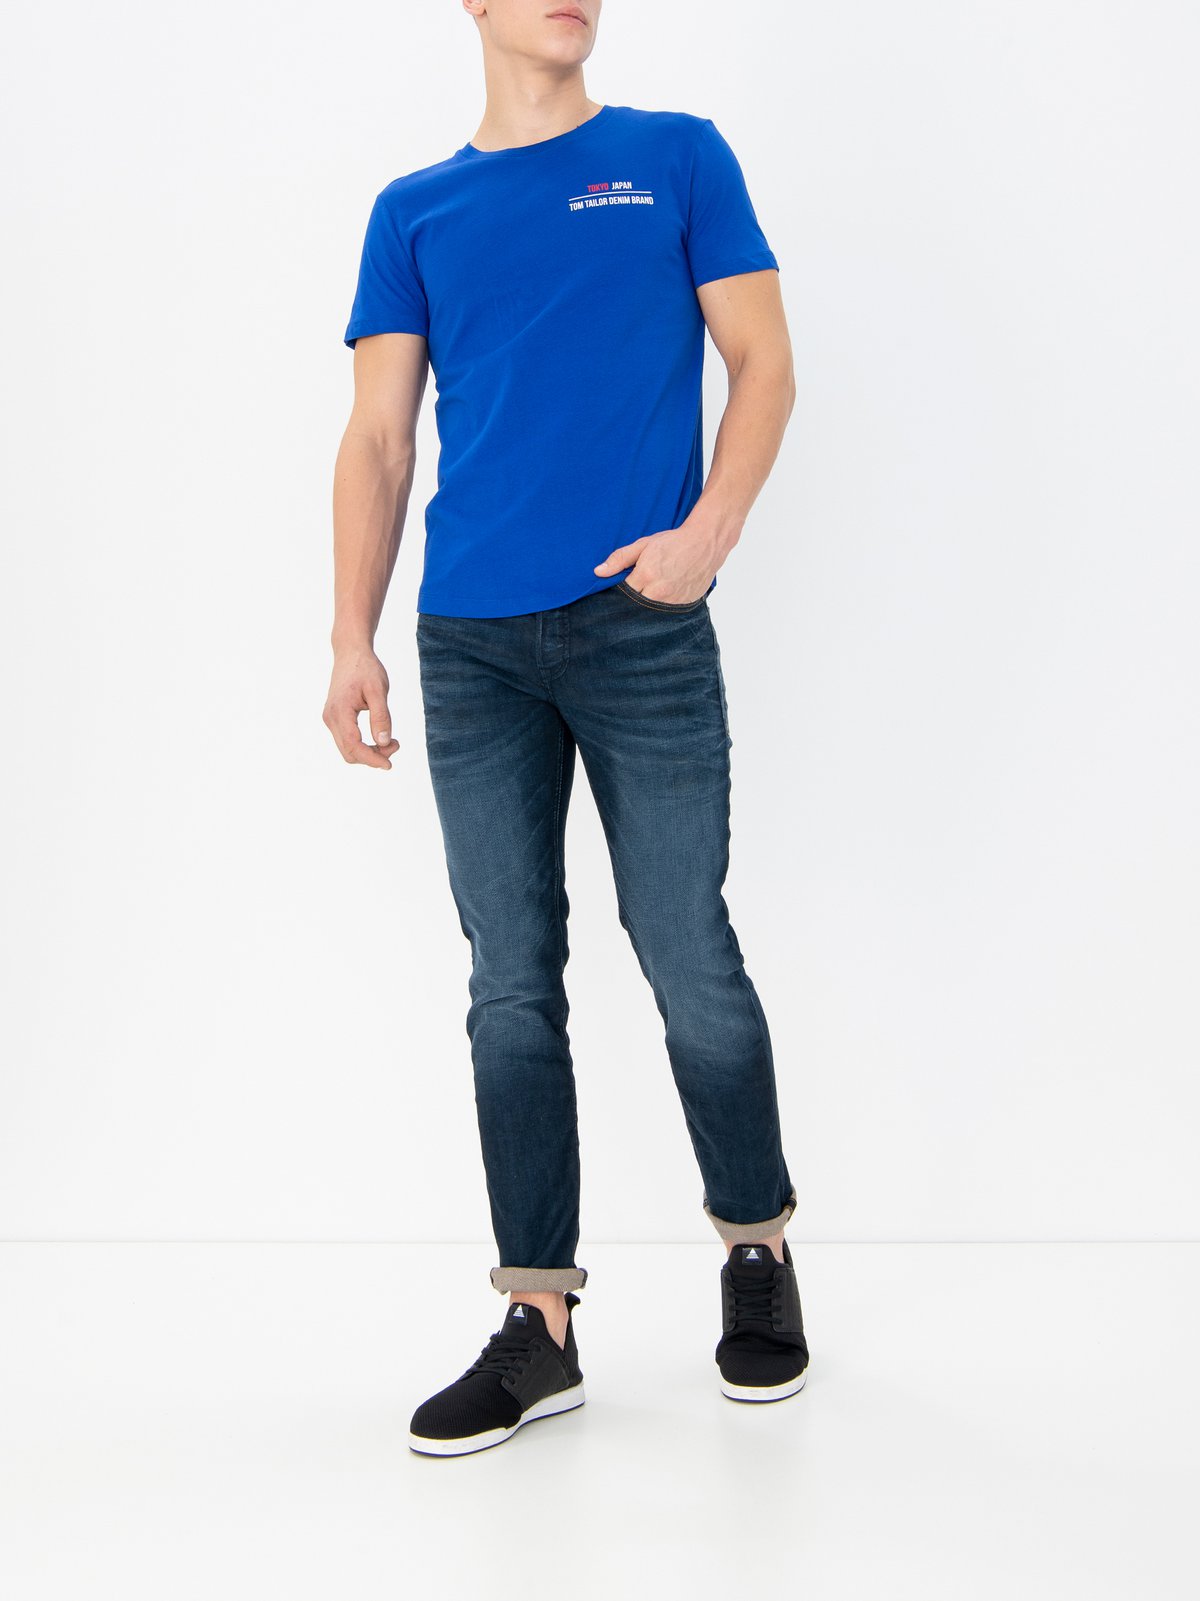 Men's t-shirt s/s blue Tom Tailor Denim